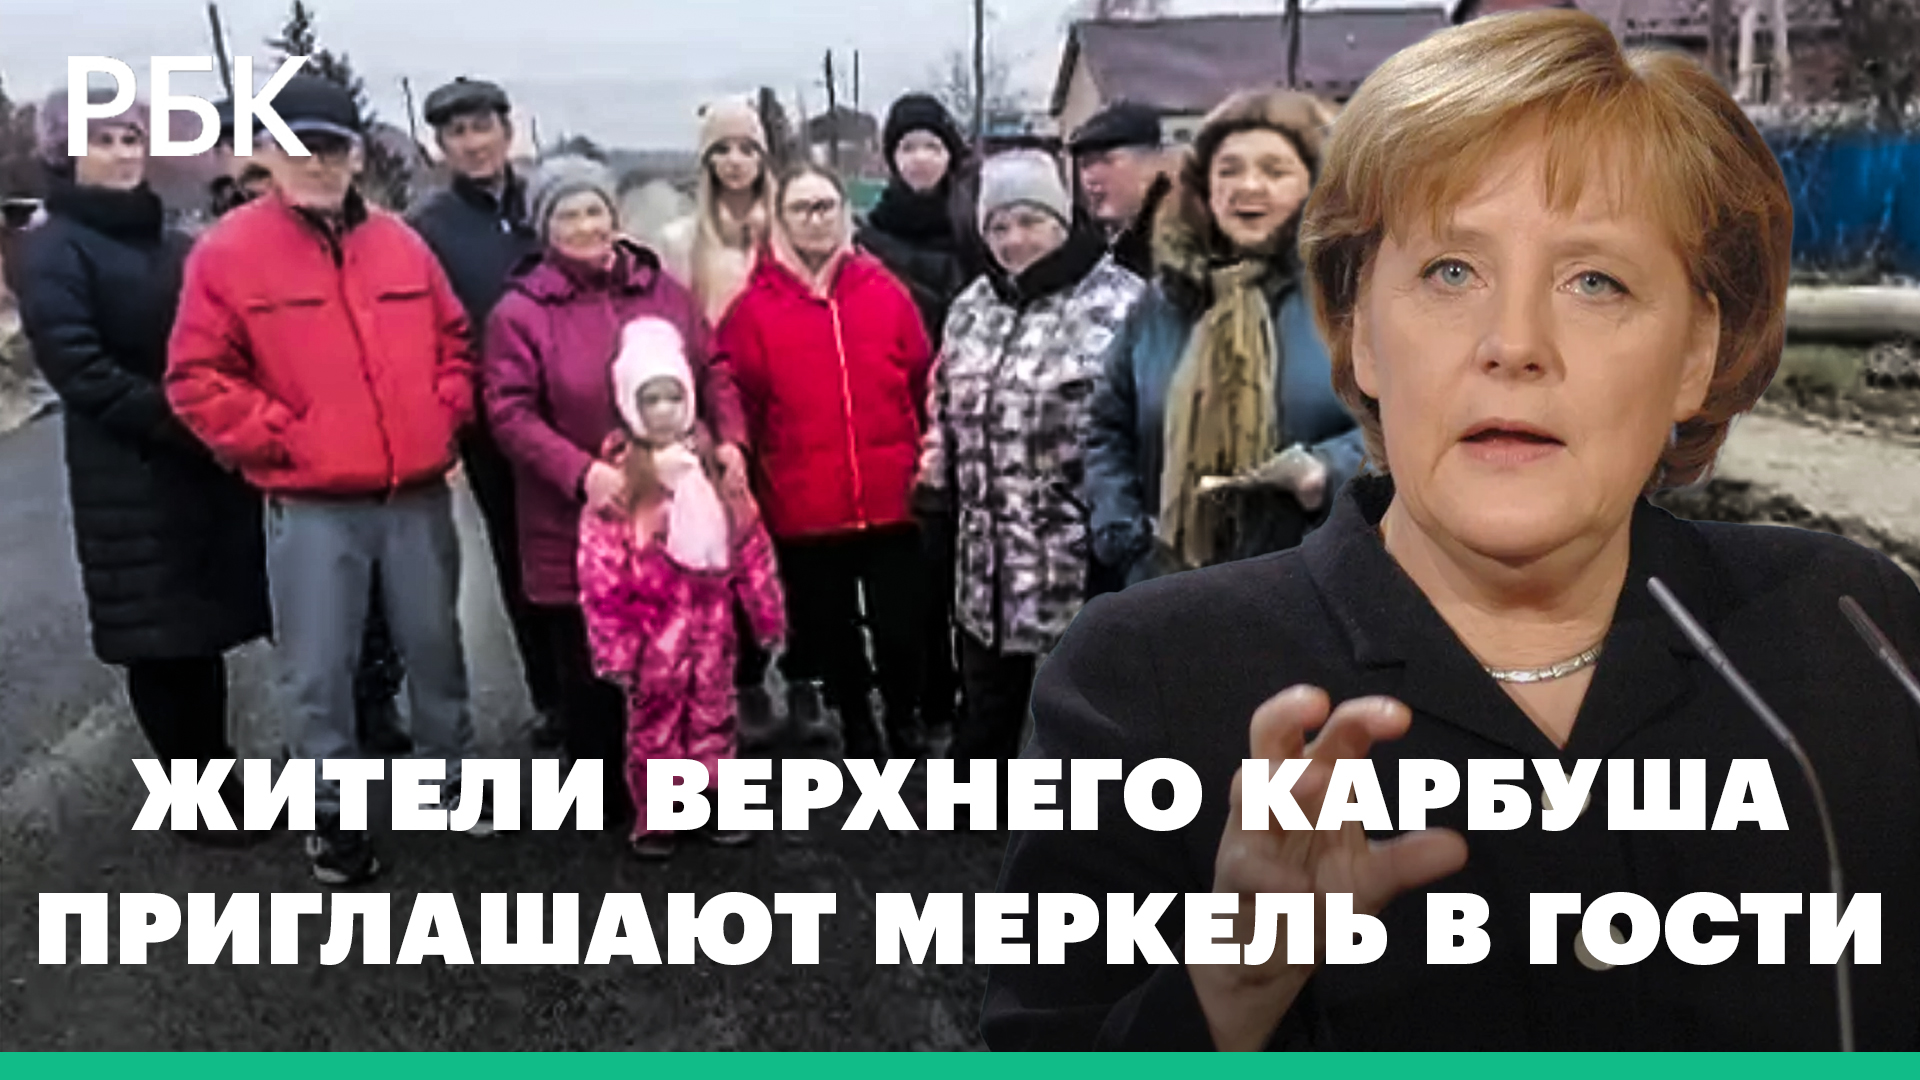 Под Омском отремонтировали дорогу, на которую жители жаловались Меркель